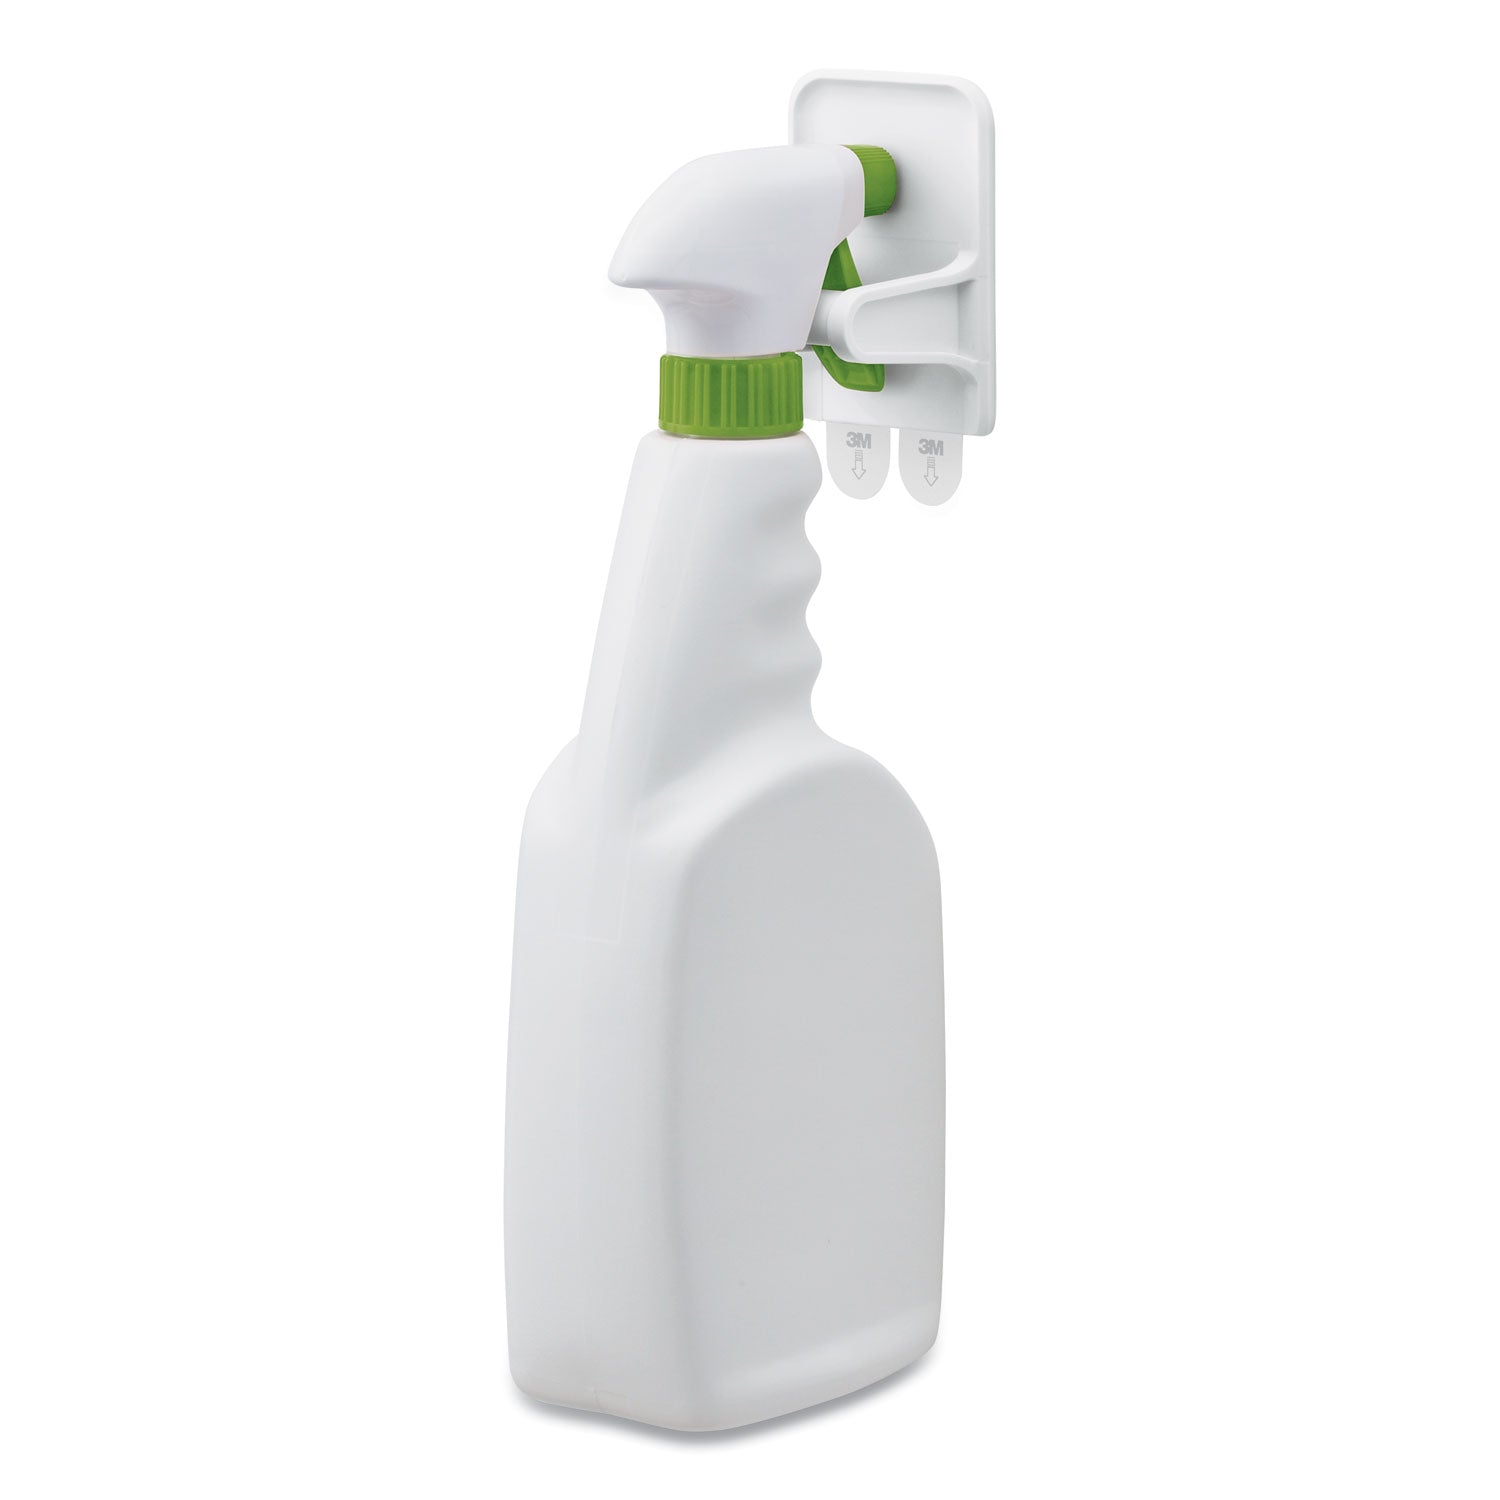 spray-bottle-holder-234w-x-169d-x-334h-white-2-hangers-4-strips-pack_mmm170092es - 3